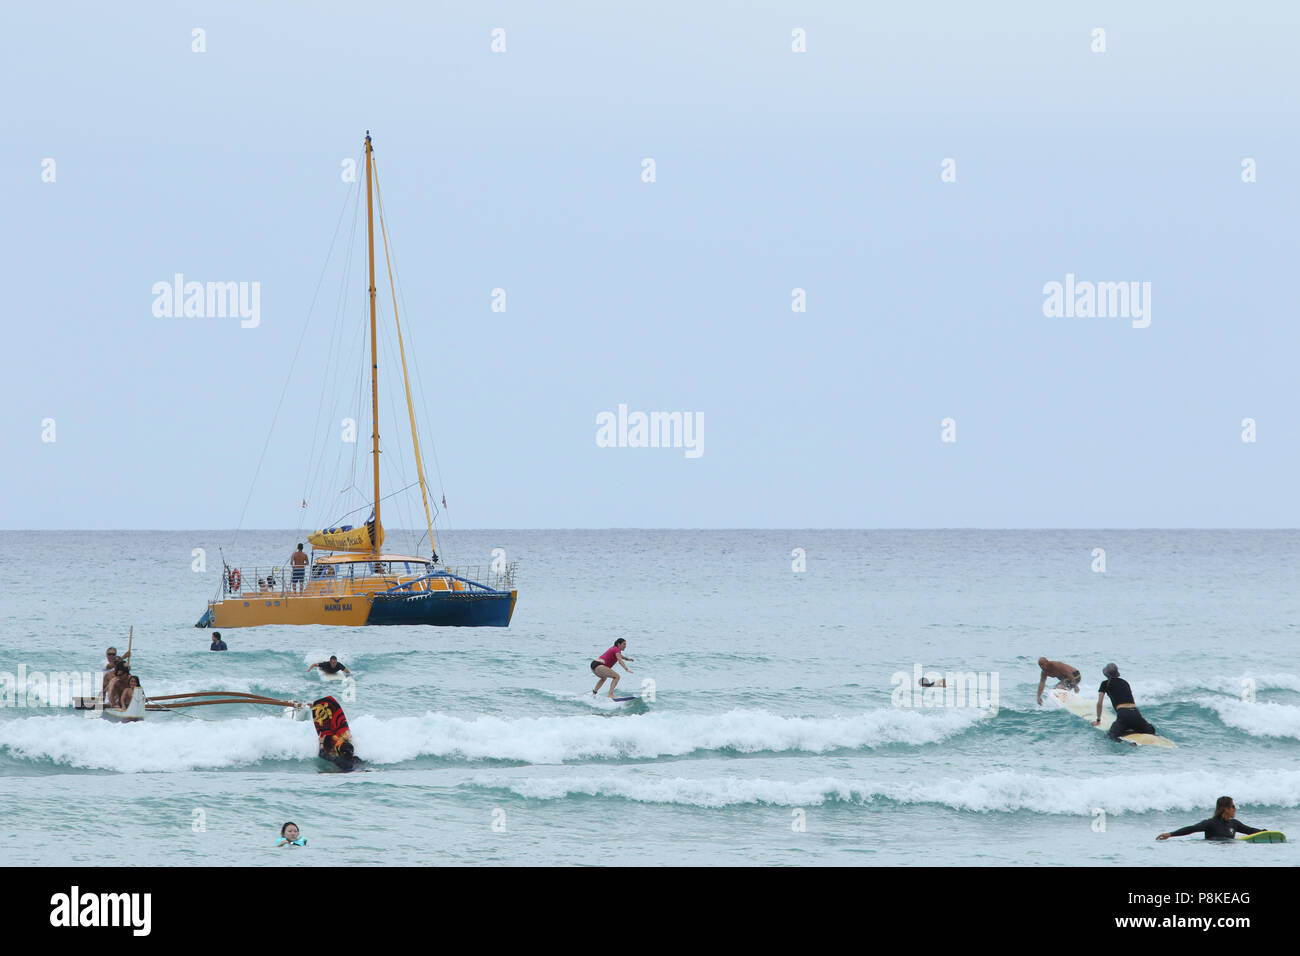 Bateau à voile nommé Manu Kai pour les touristes. Les surfeurs et les gens dans l'eau sont visibles. La plage de Waikiki, Waikiki, Honolulu, Oahu, Hawaii, USA. Banque D'Images